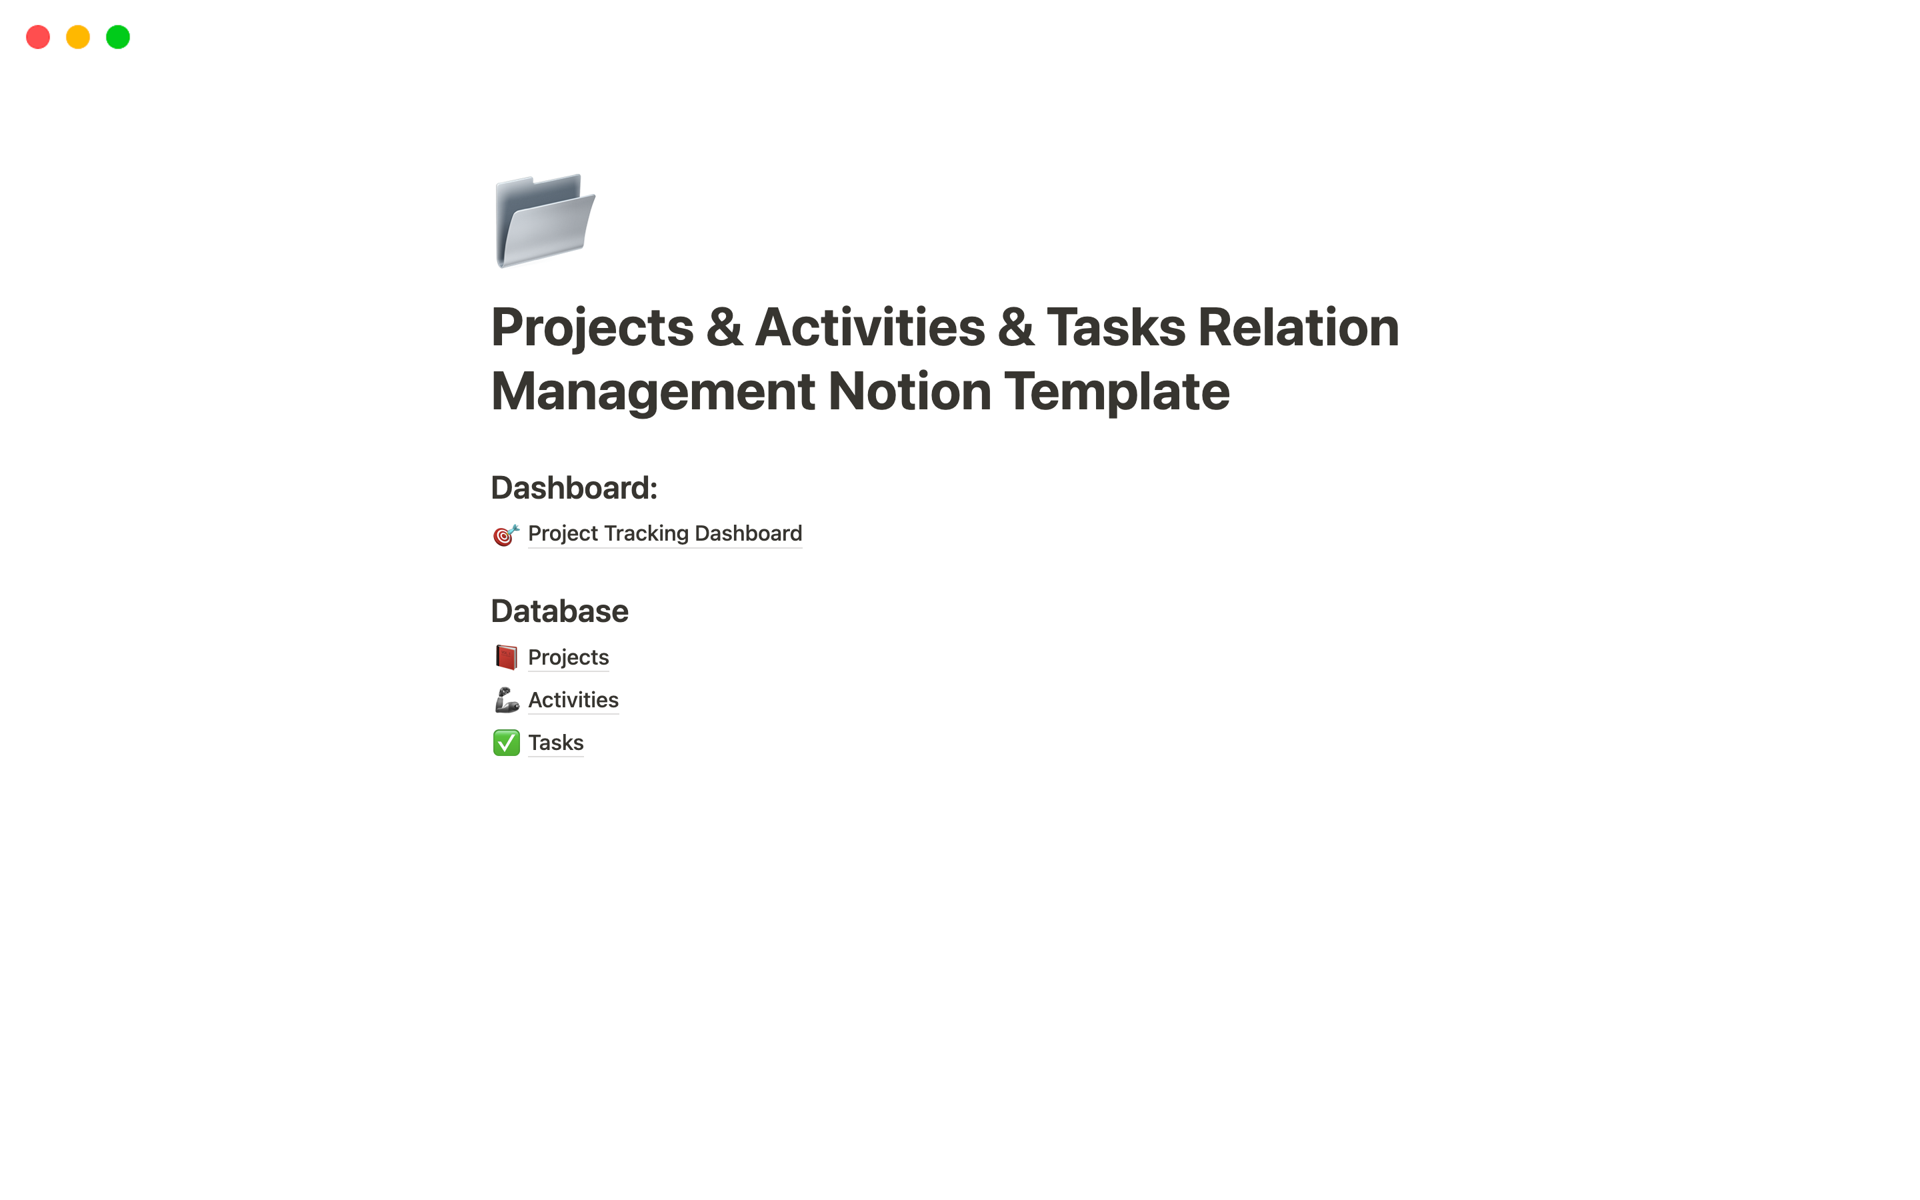 Aperçu du modèle de Projects & Activities & Tasks Relation Management